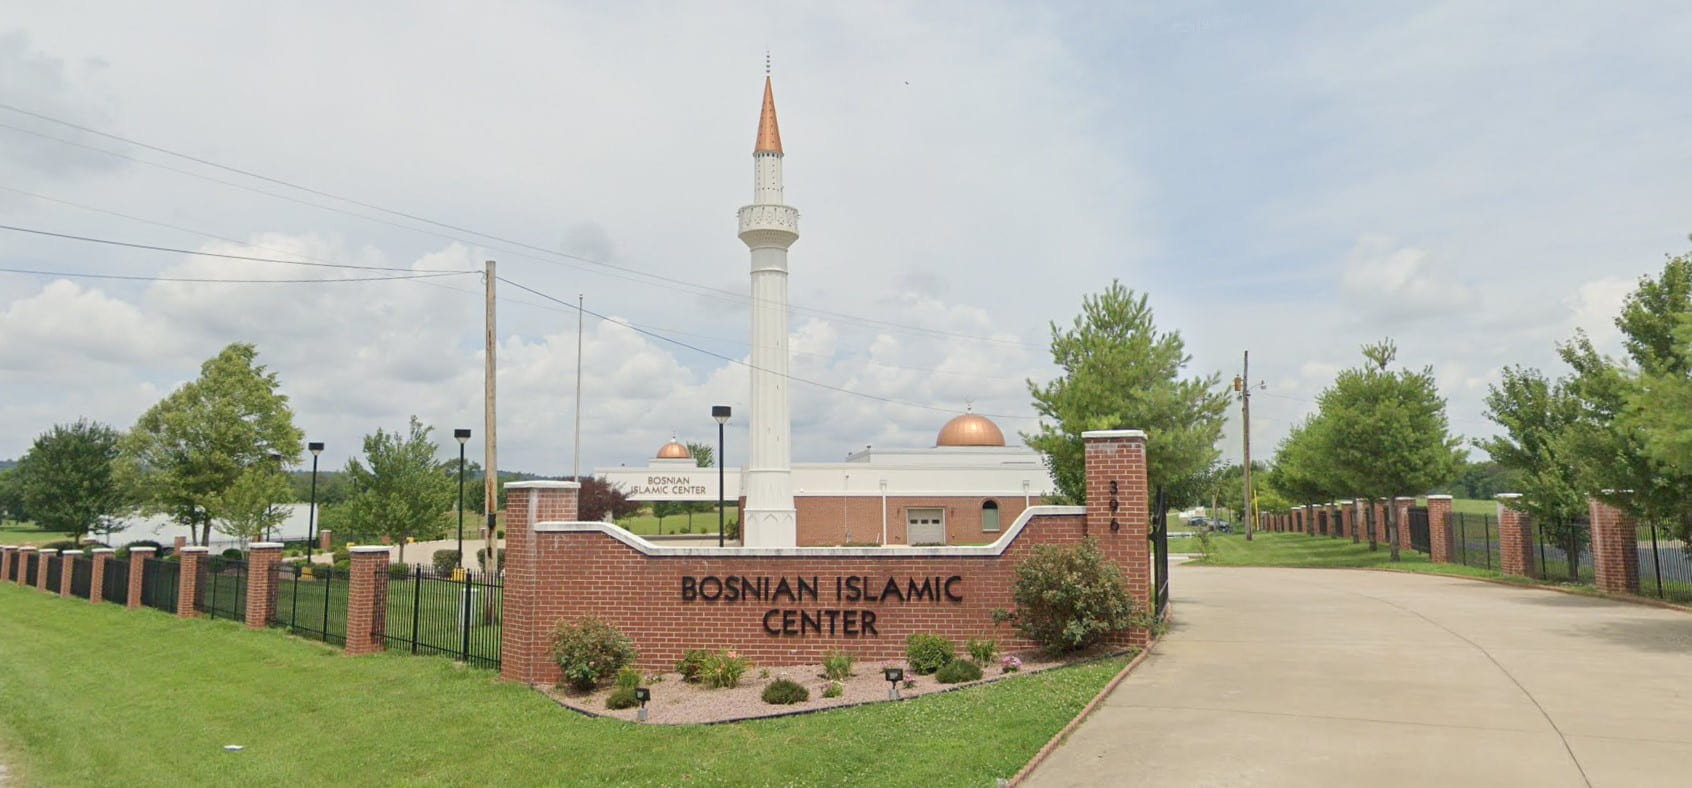 Bosnian Islamic Center of Bowling Green